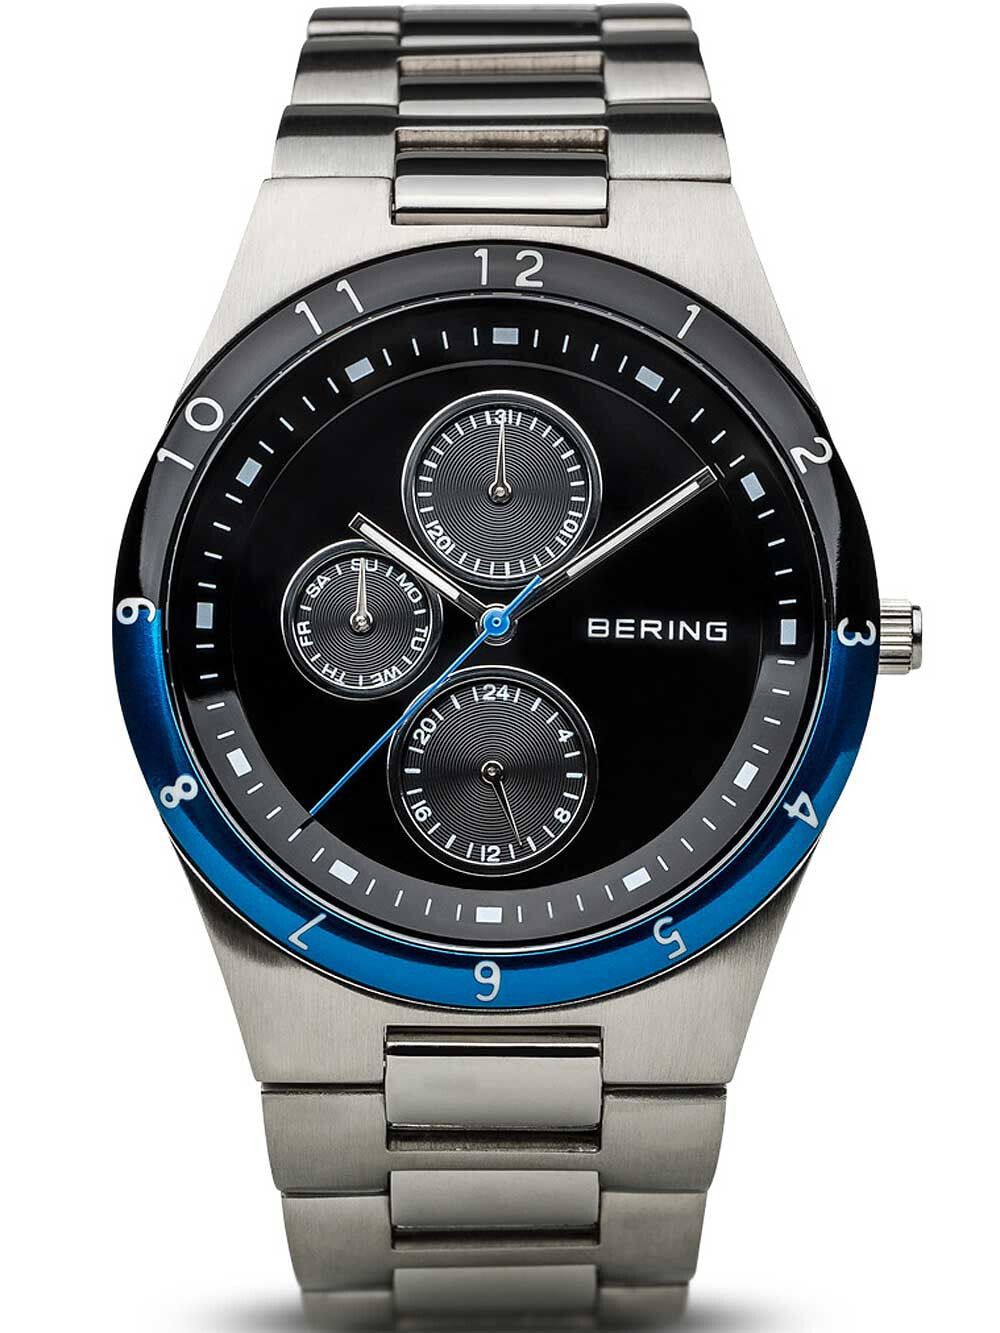 Мужские наручные часы с серебряным браслетом Bering 32339-702 classic mens watch 39mm 5ATM